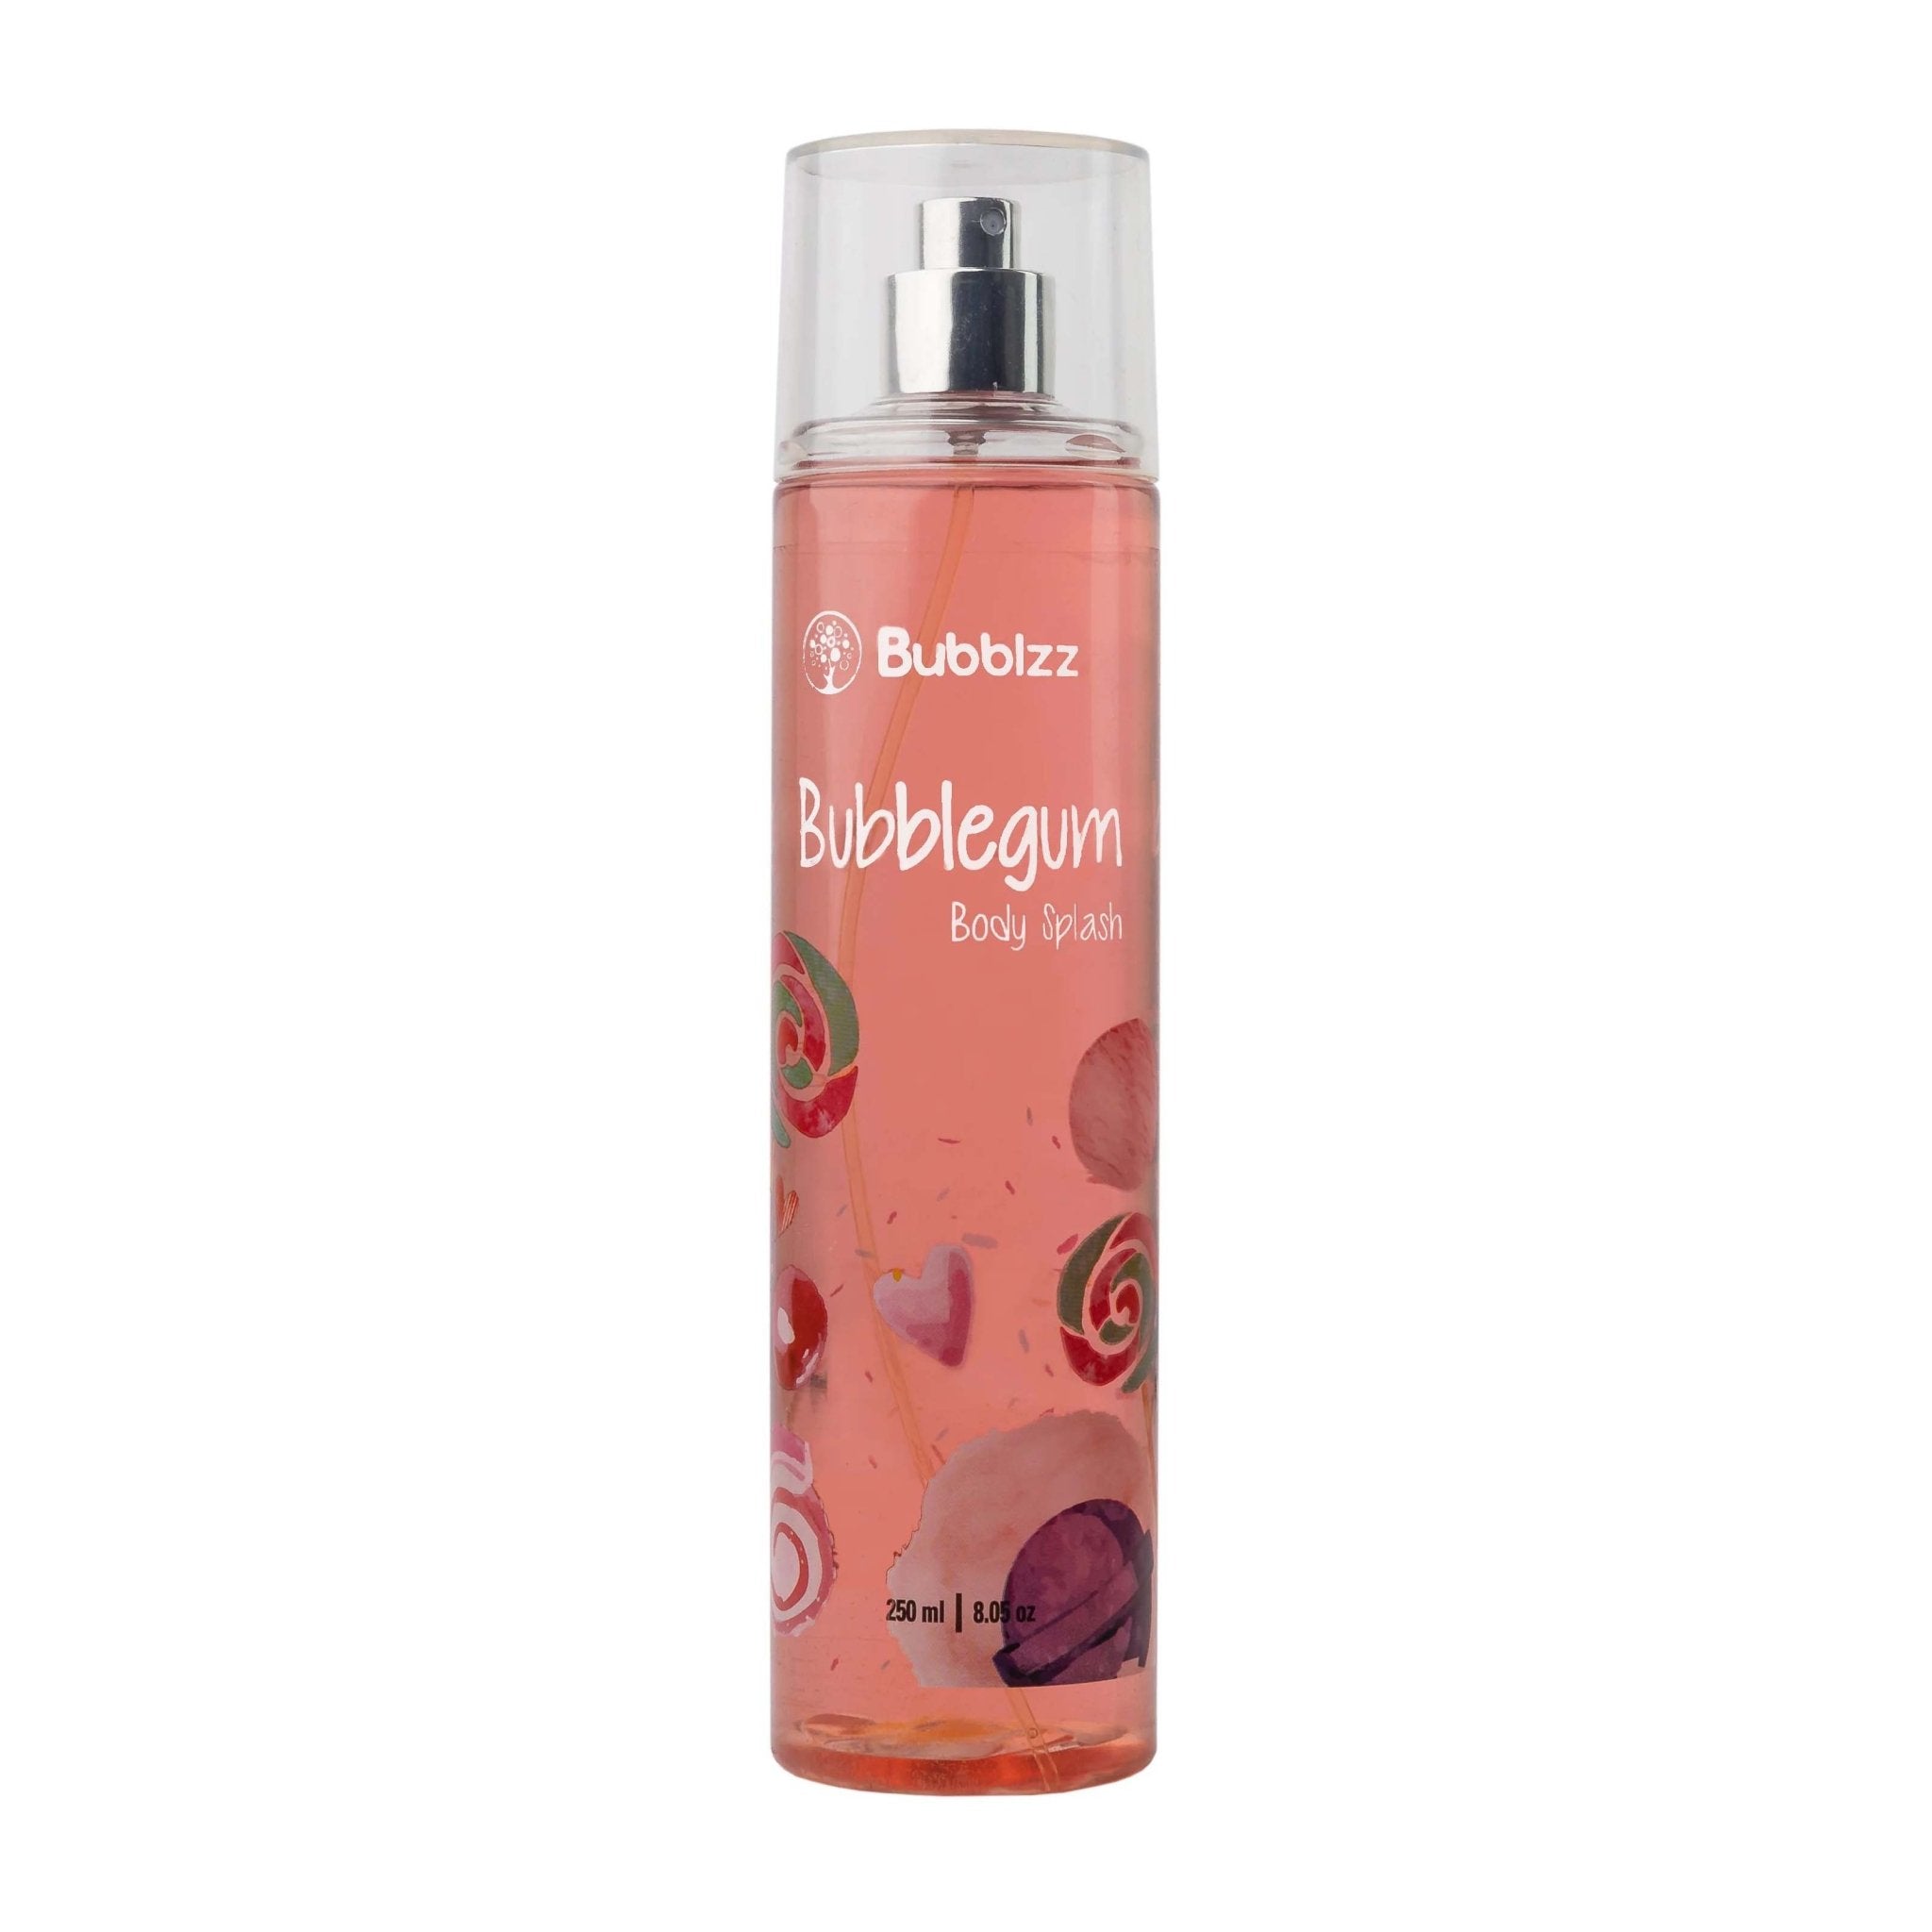 Bubblzz Bubblegum Body Splash – 250ml - Bloom Pharmacy